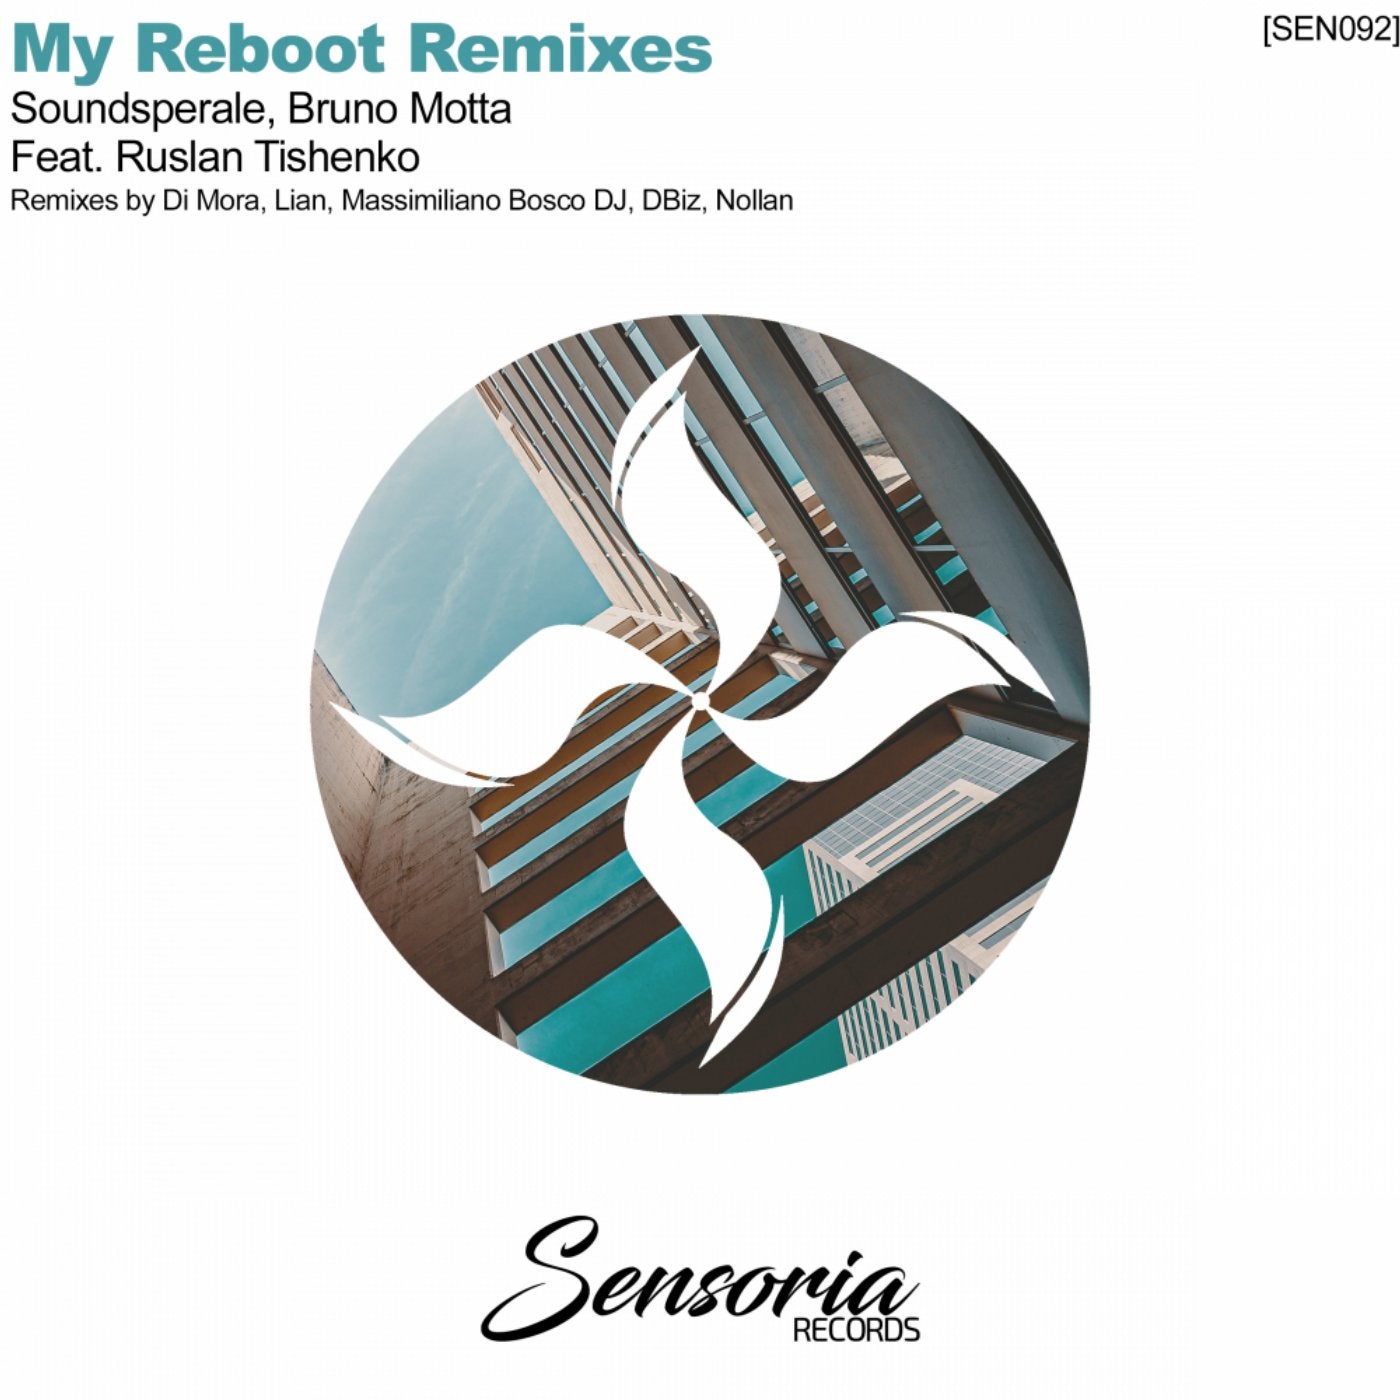 My Reboot Remixes